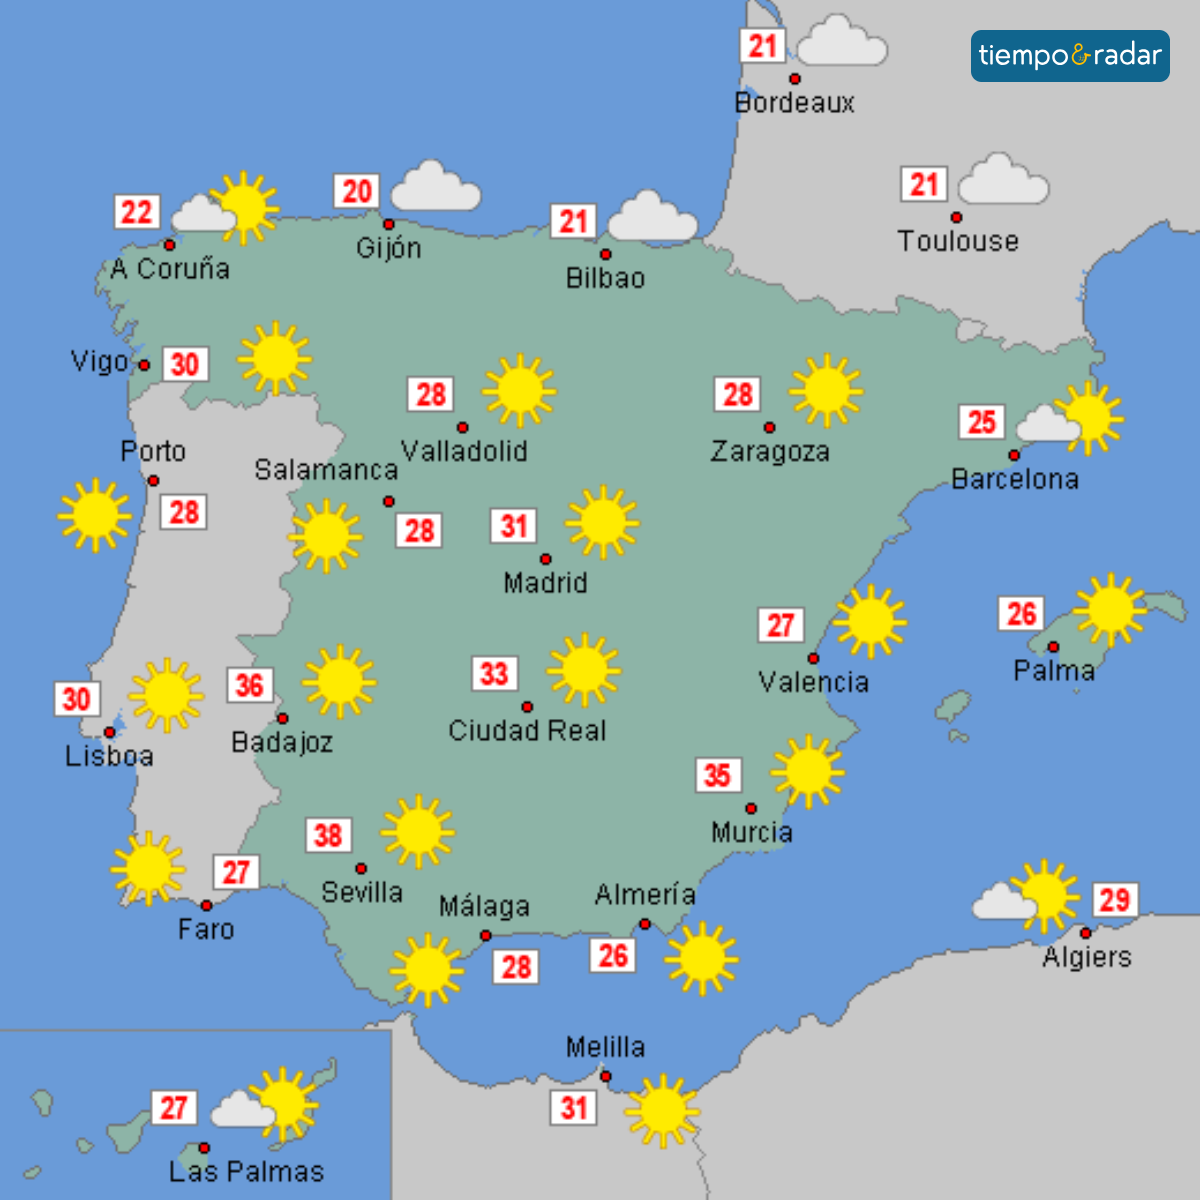 Calor sofocante en el suroeste, con máximas de hasta 37 grados en Badajoz y Sevilla.